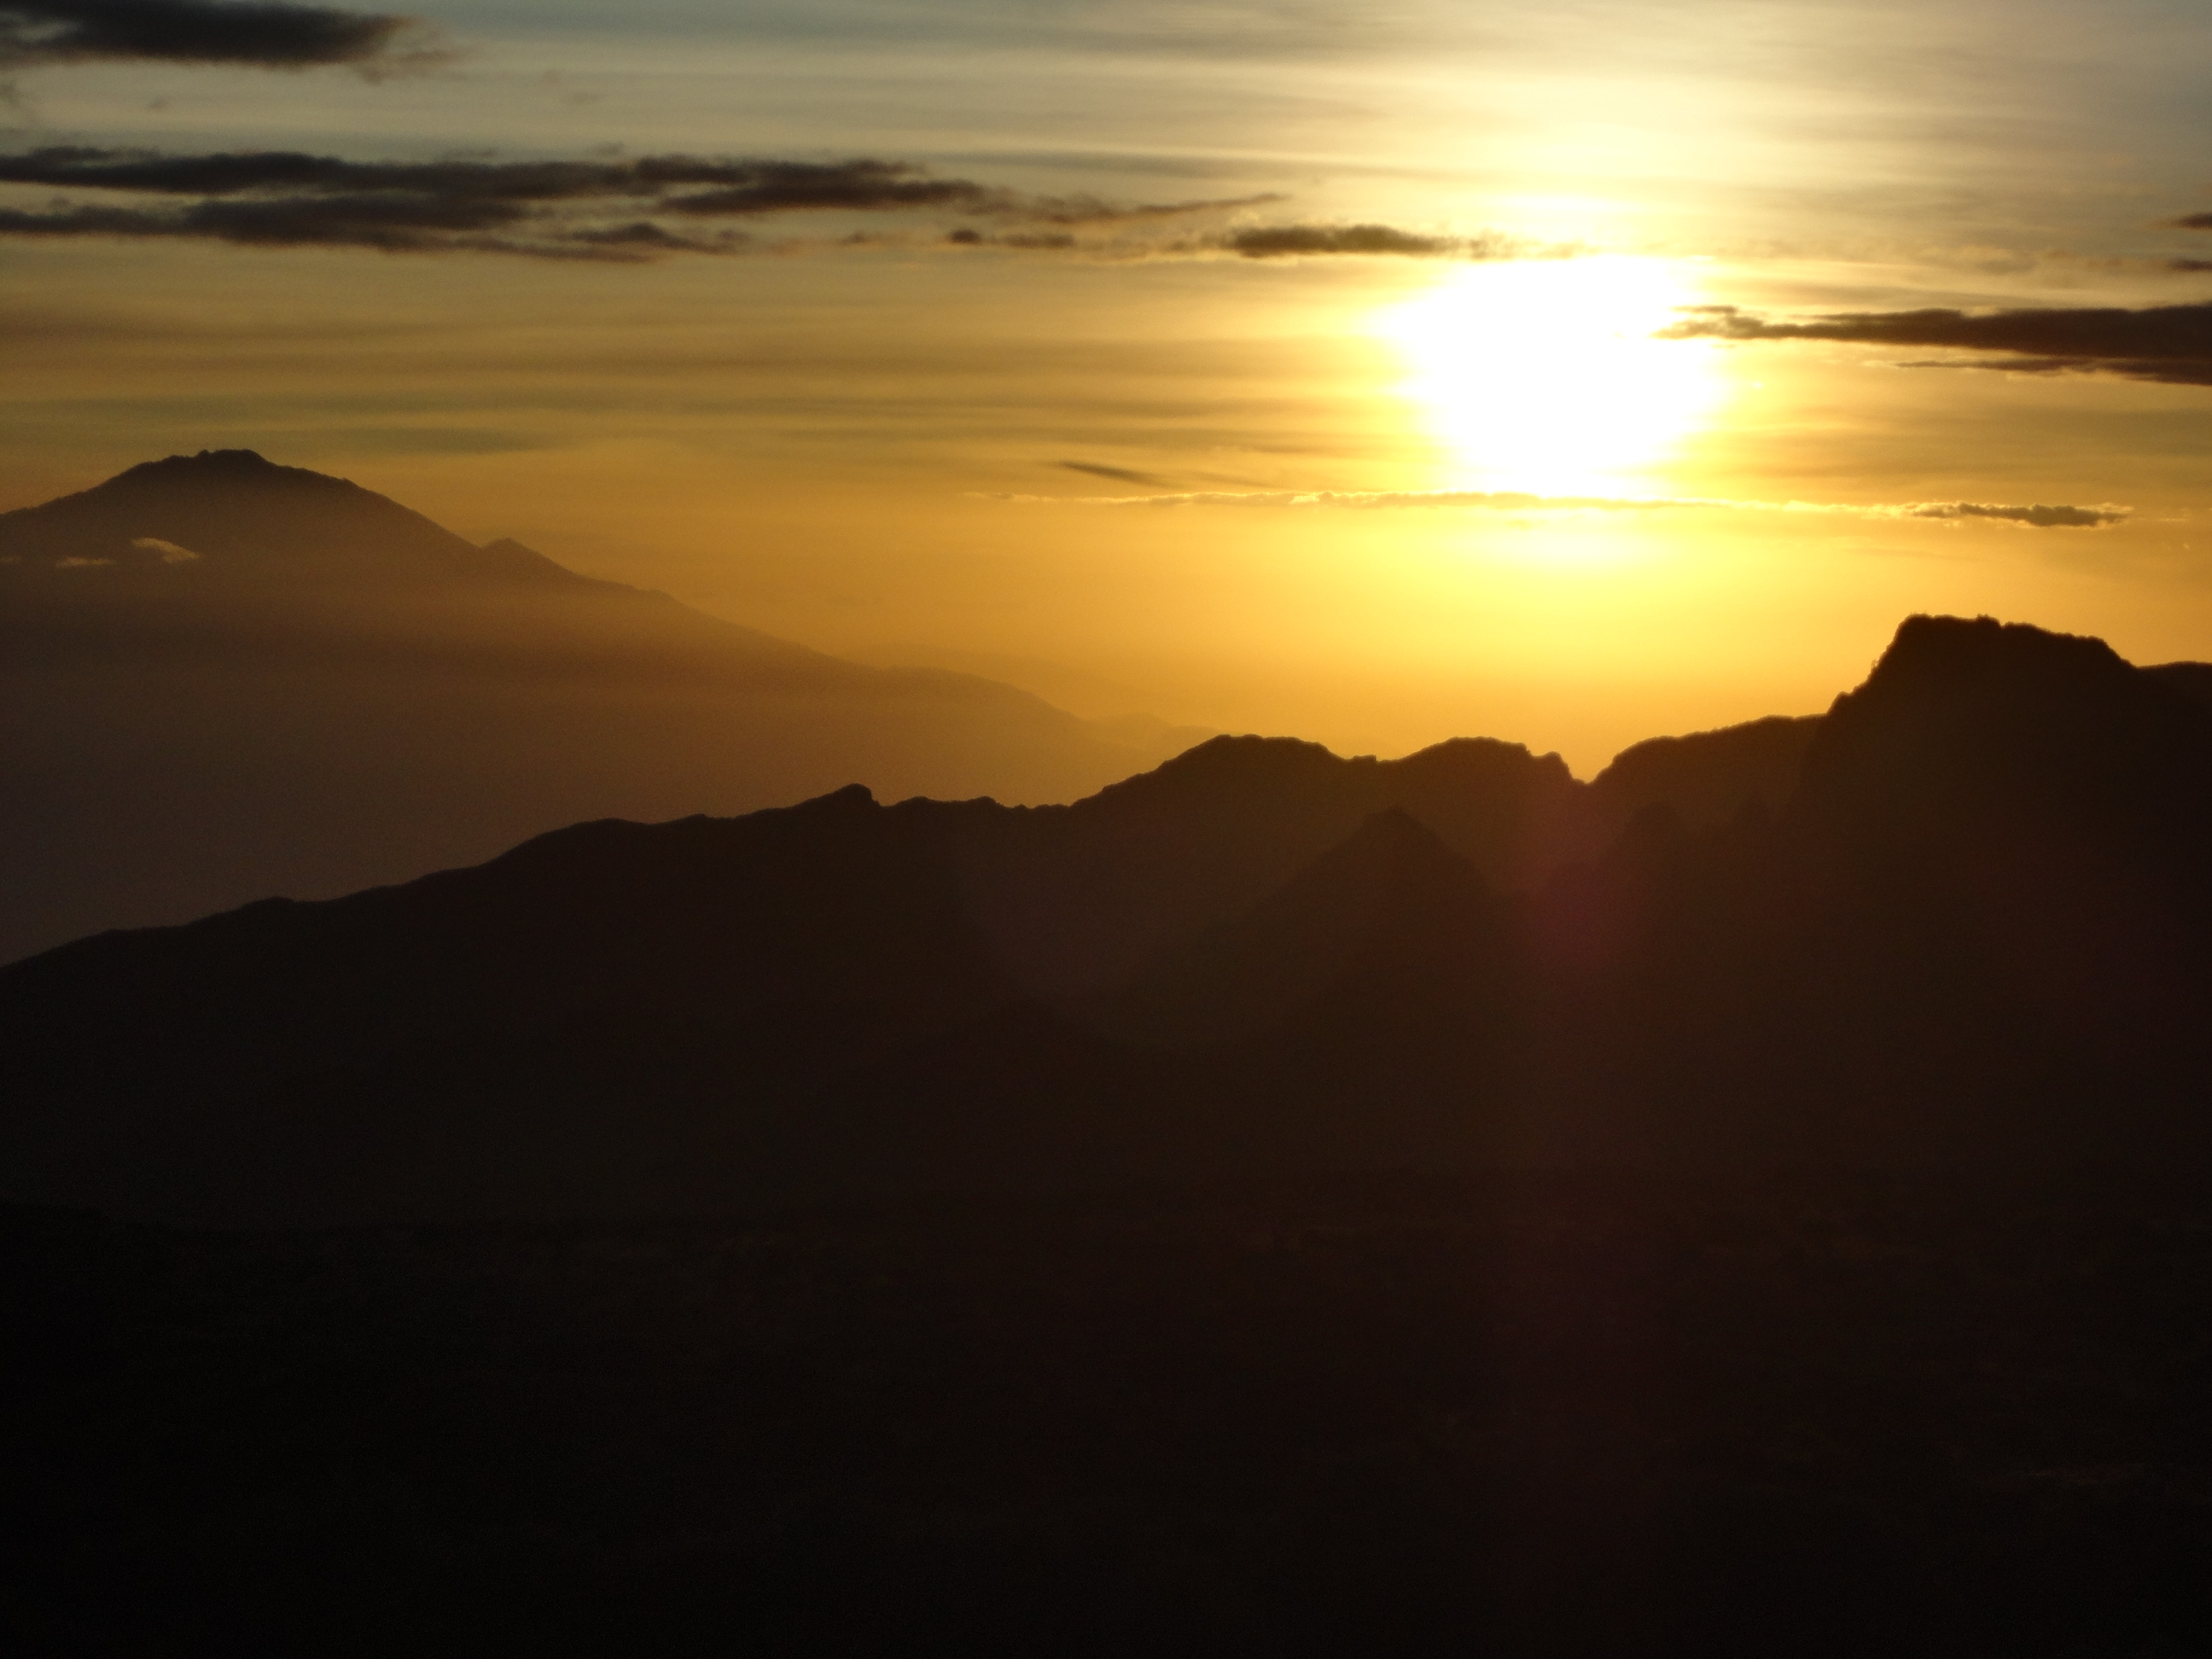 Watching the Sunrise on Kilimanjaro